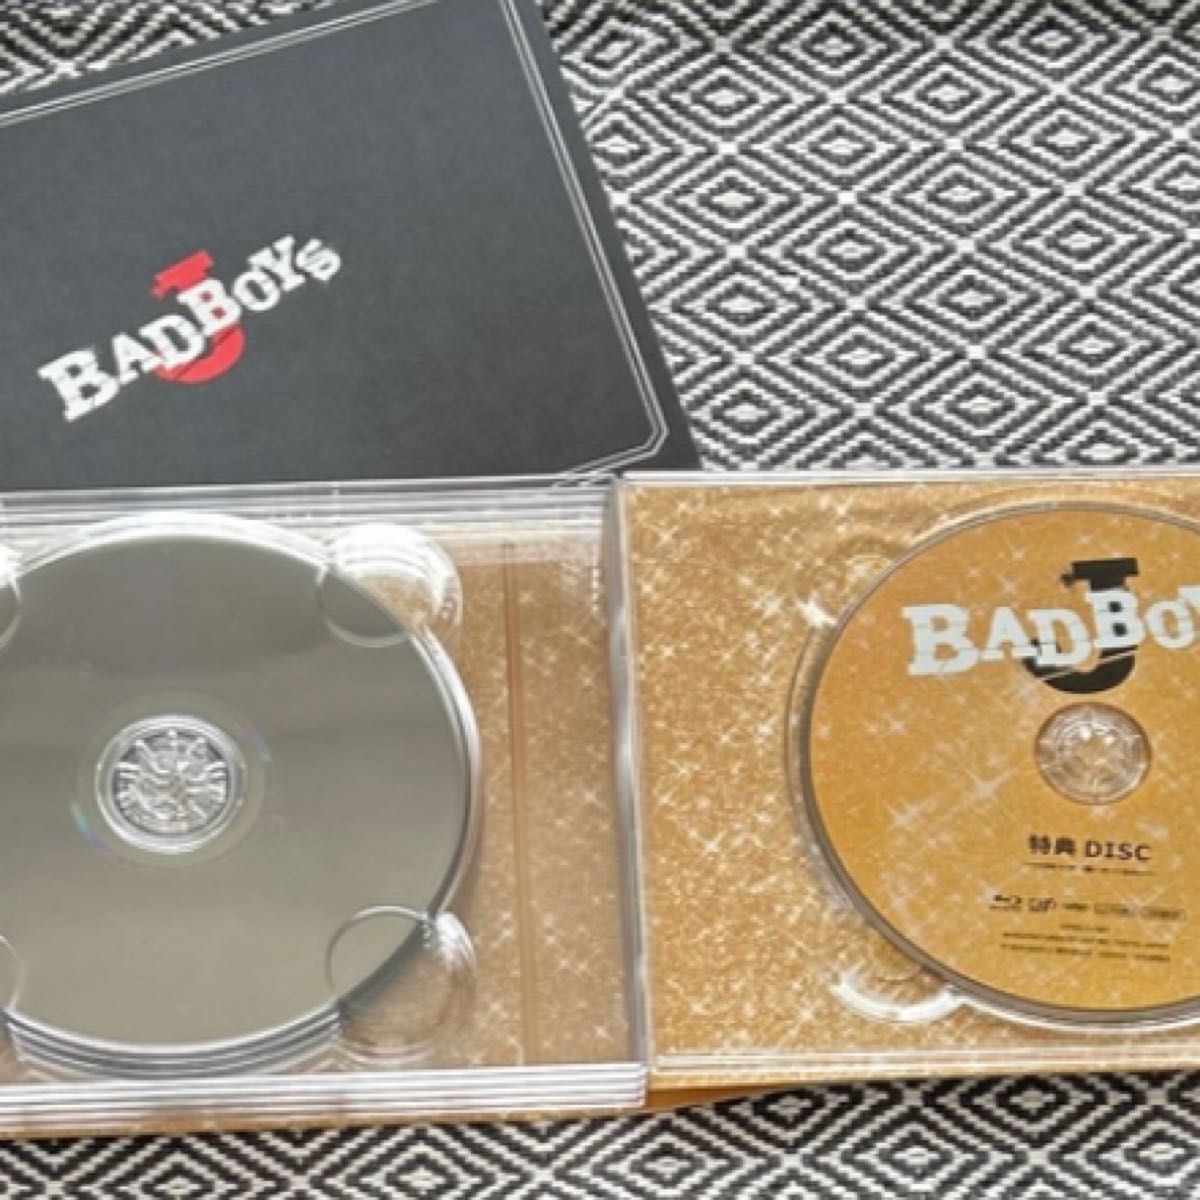 BAD BOYS J Blu-ray BOX豪華版(本編4枚＋ディスク)(初回限定生産) バンダナ付き